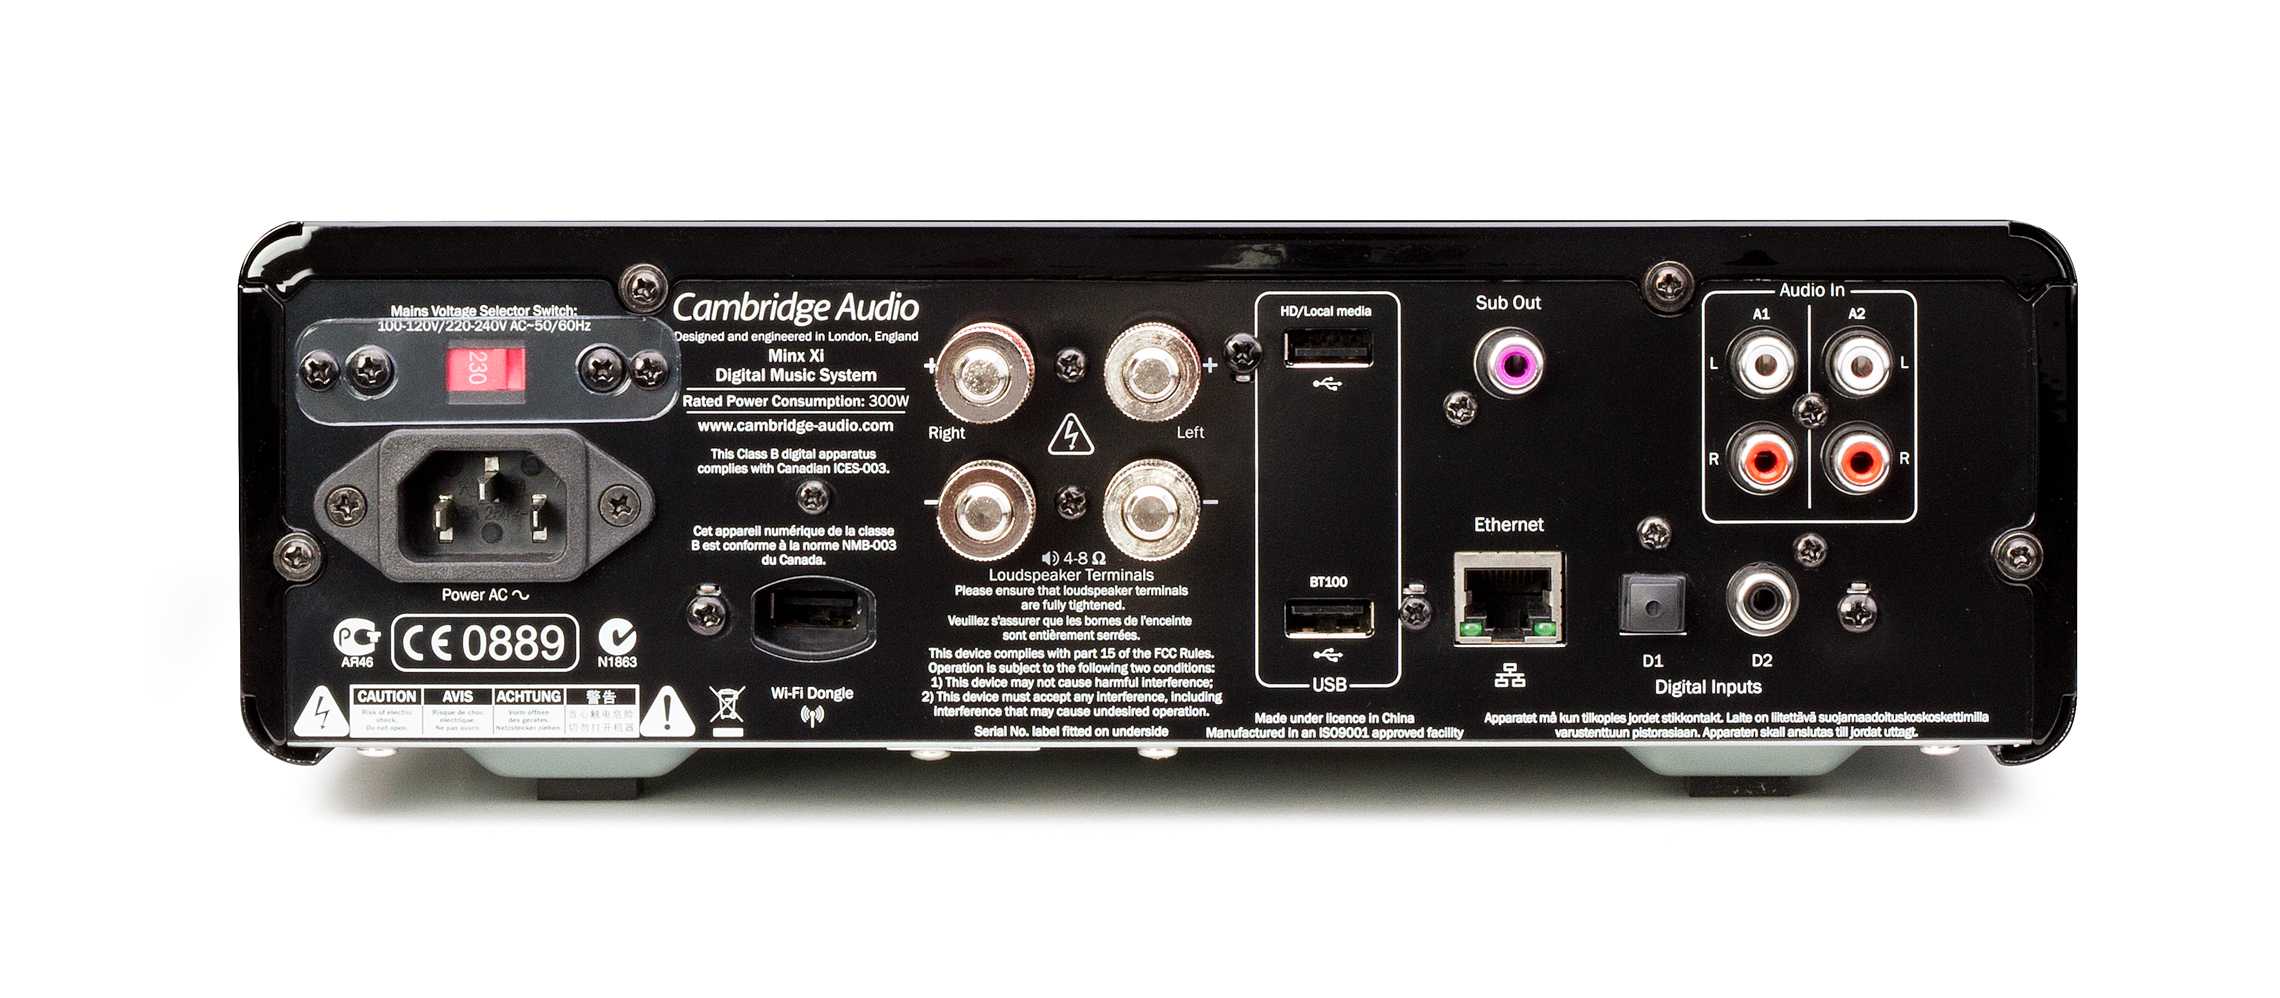 Тест сетевого плеера cambridge audio cxn и усилителя cambridge audio cxa80: созерцать и сопереживать • stereo.ru